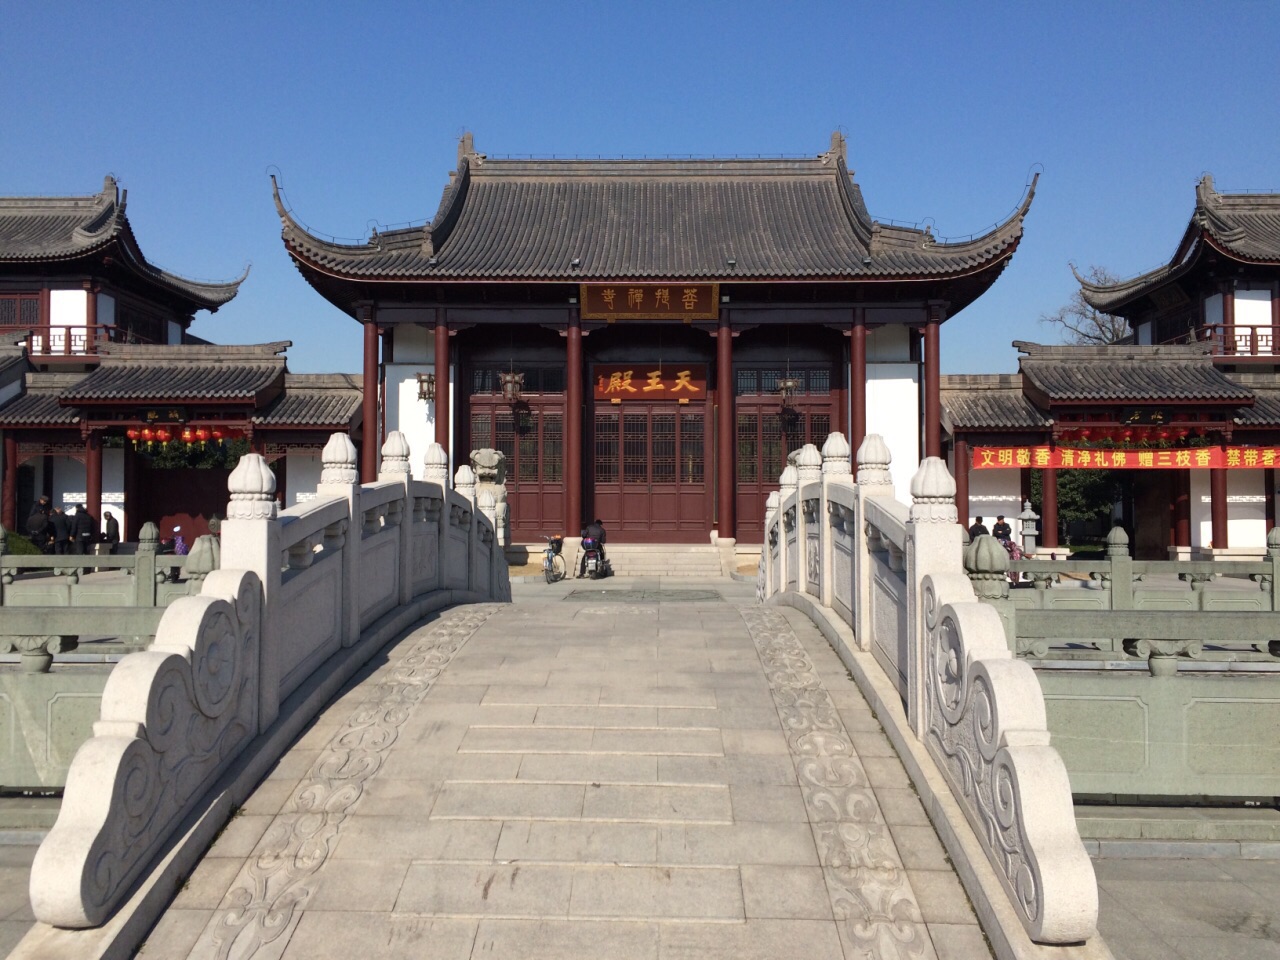 【携程攻略】上海菩提寺好玩吗,上海菩提寺景点怎么样